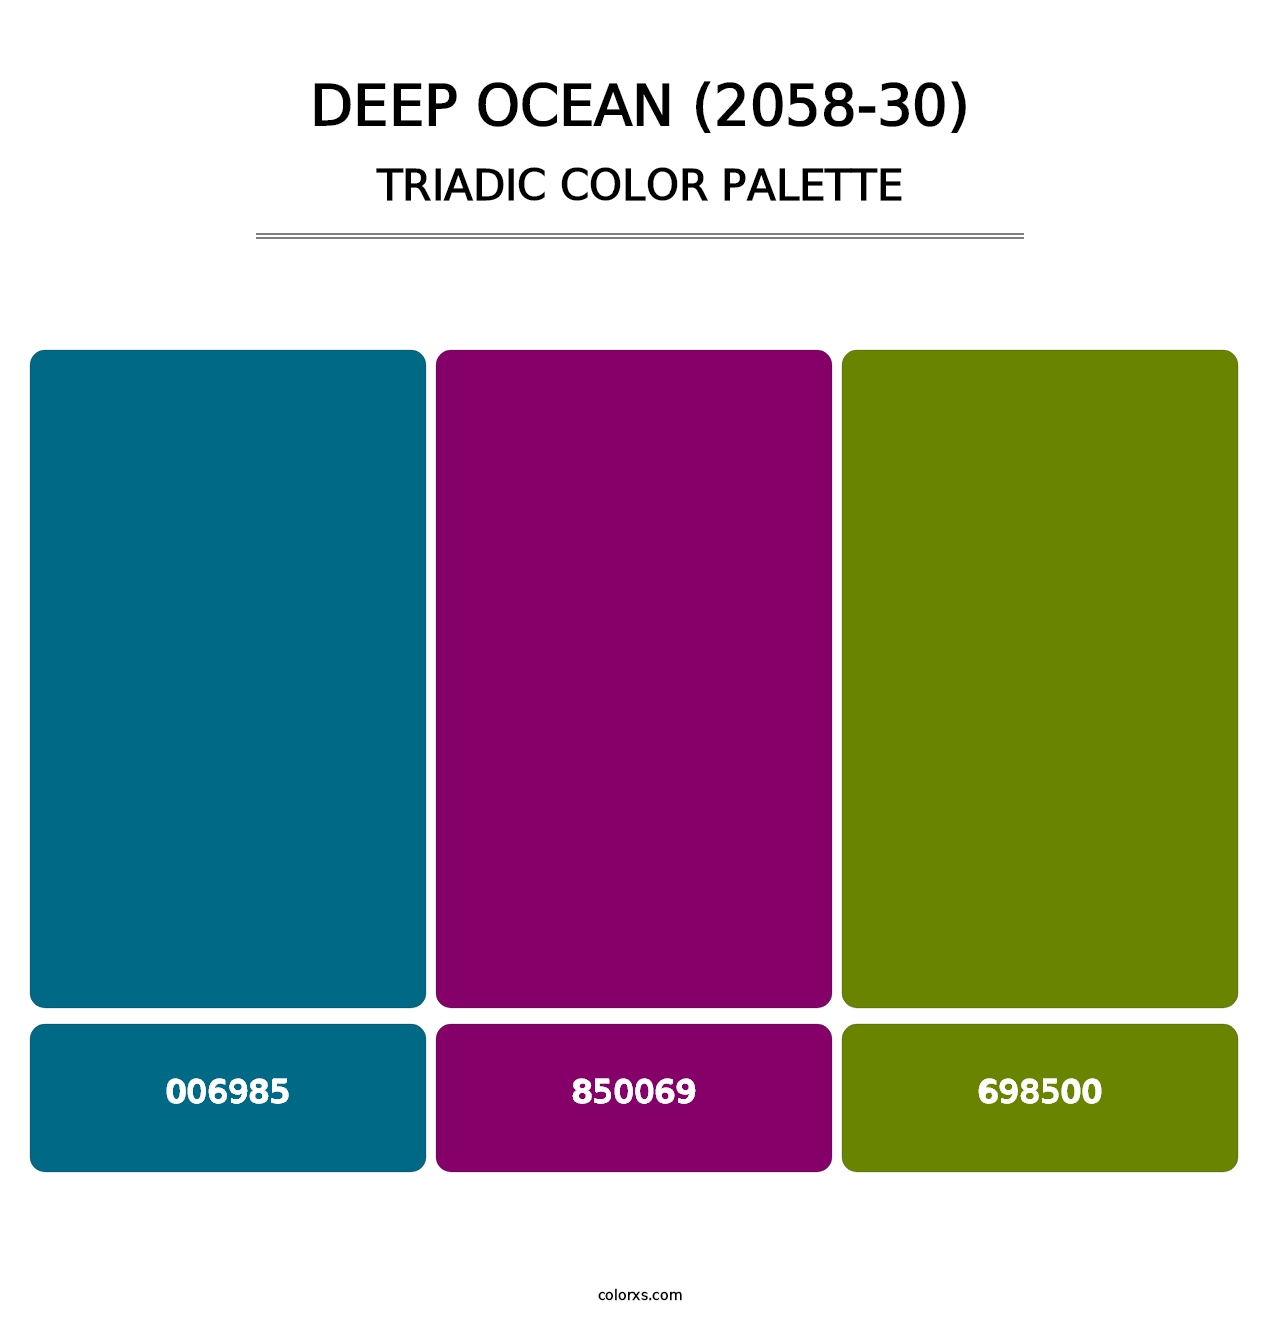 Deep Ocean (2058-30) - Triadic Color Palette